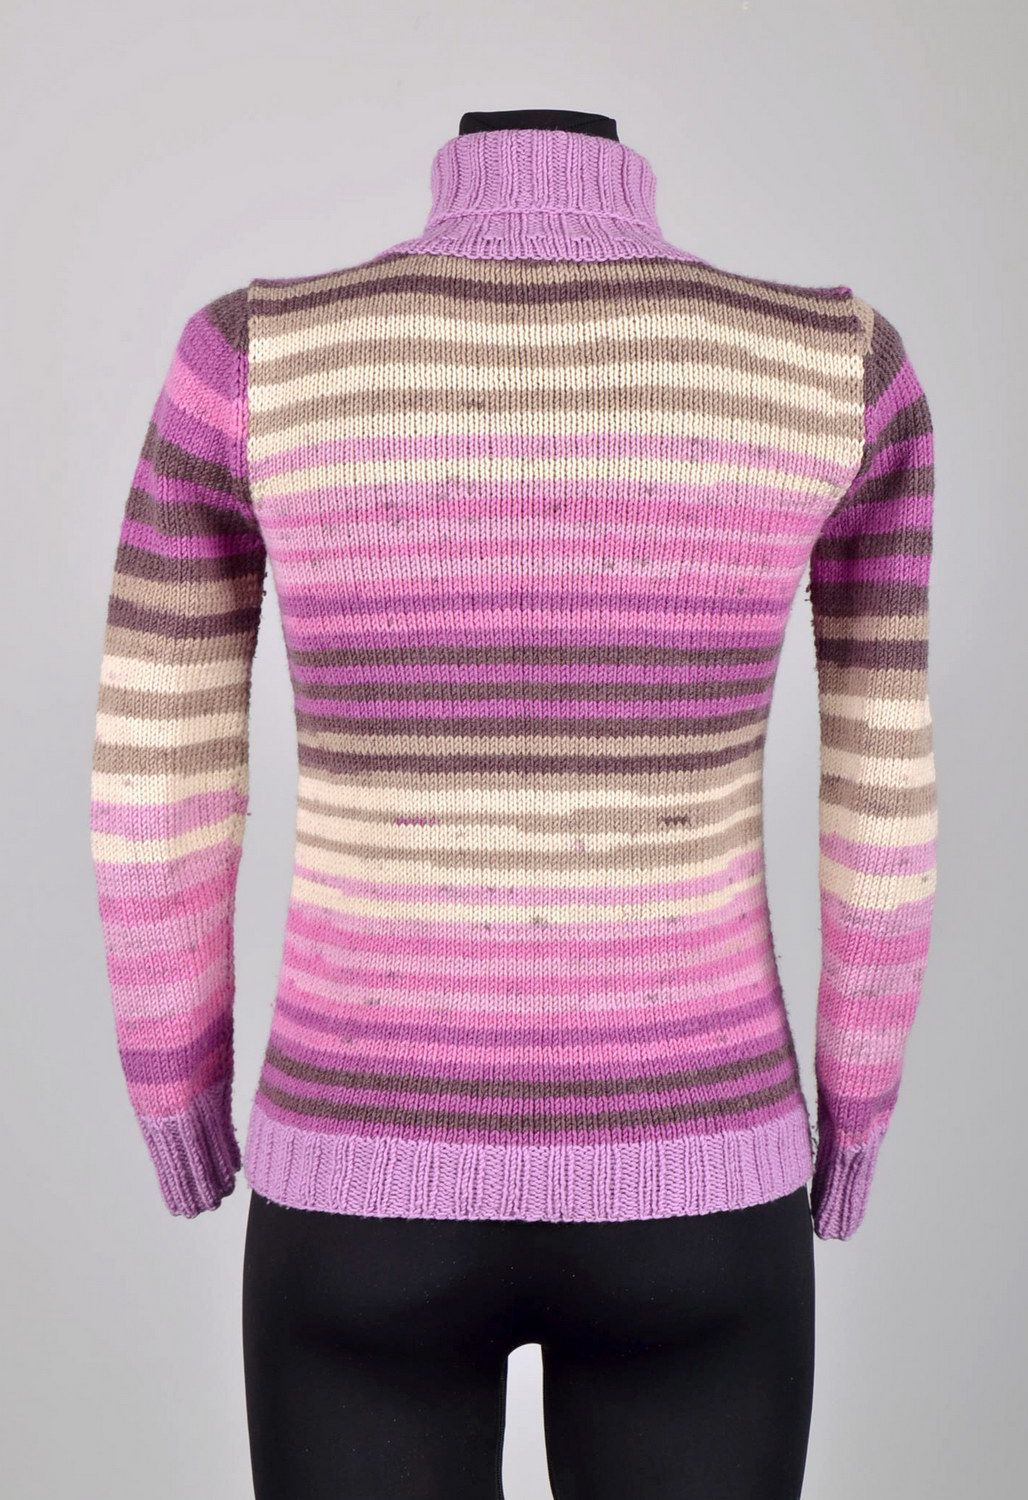 Шерстяной вязаный свитер в сиреневых тонах фото 5